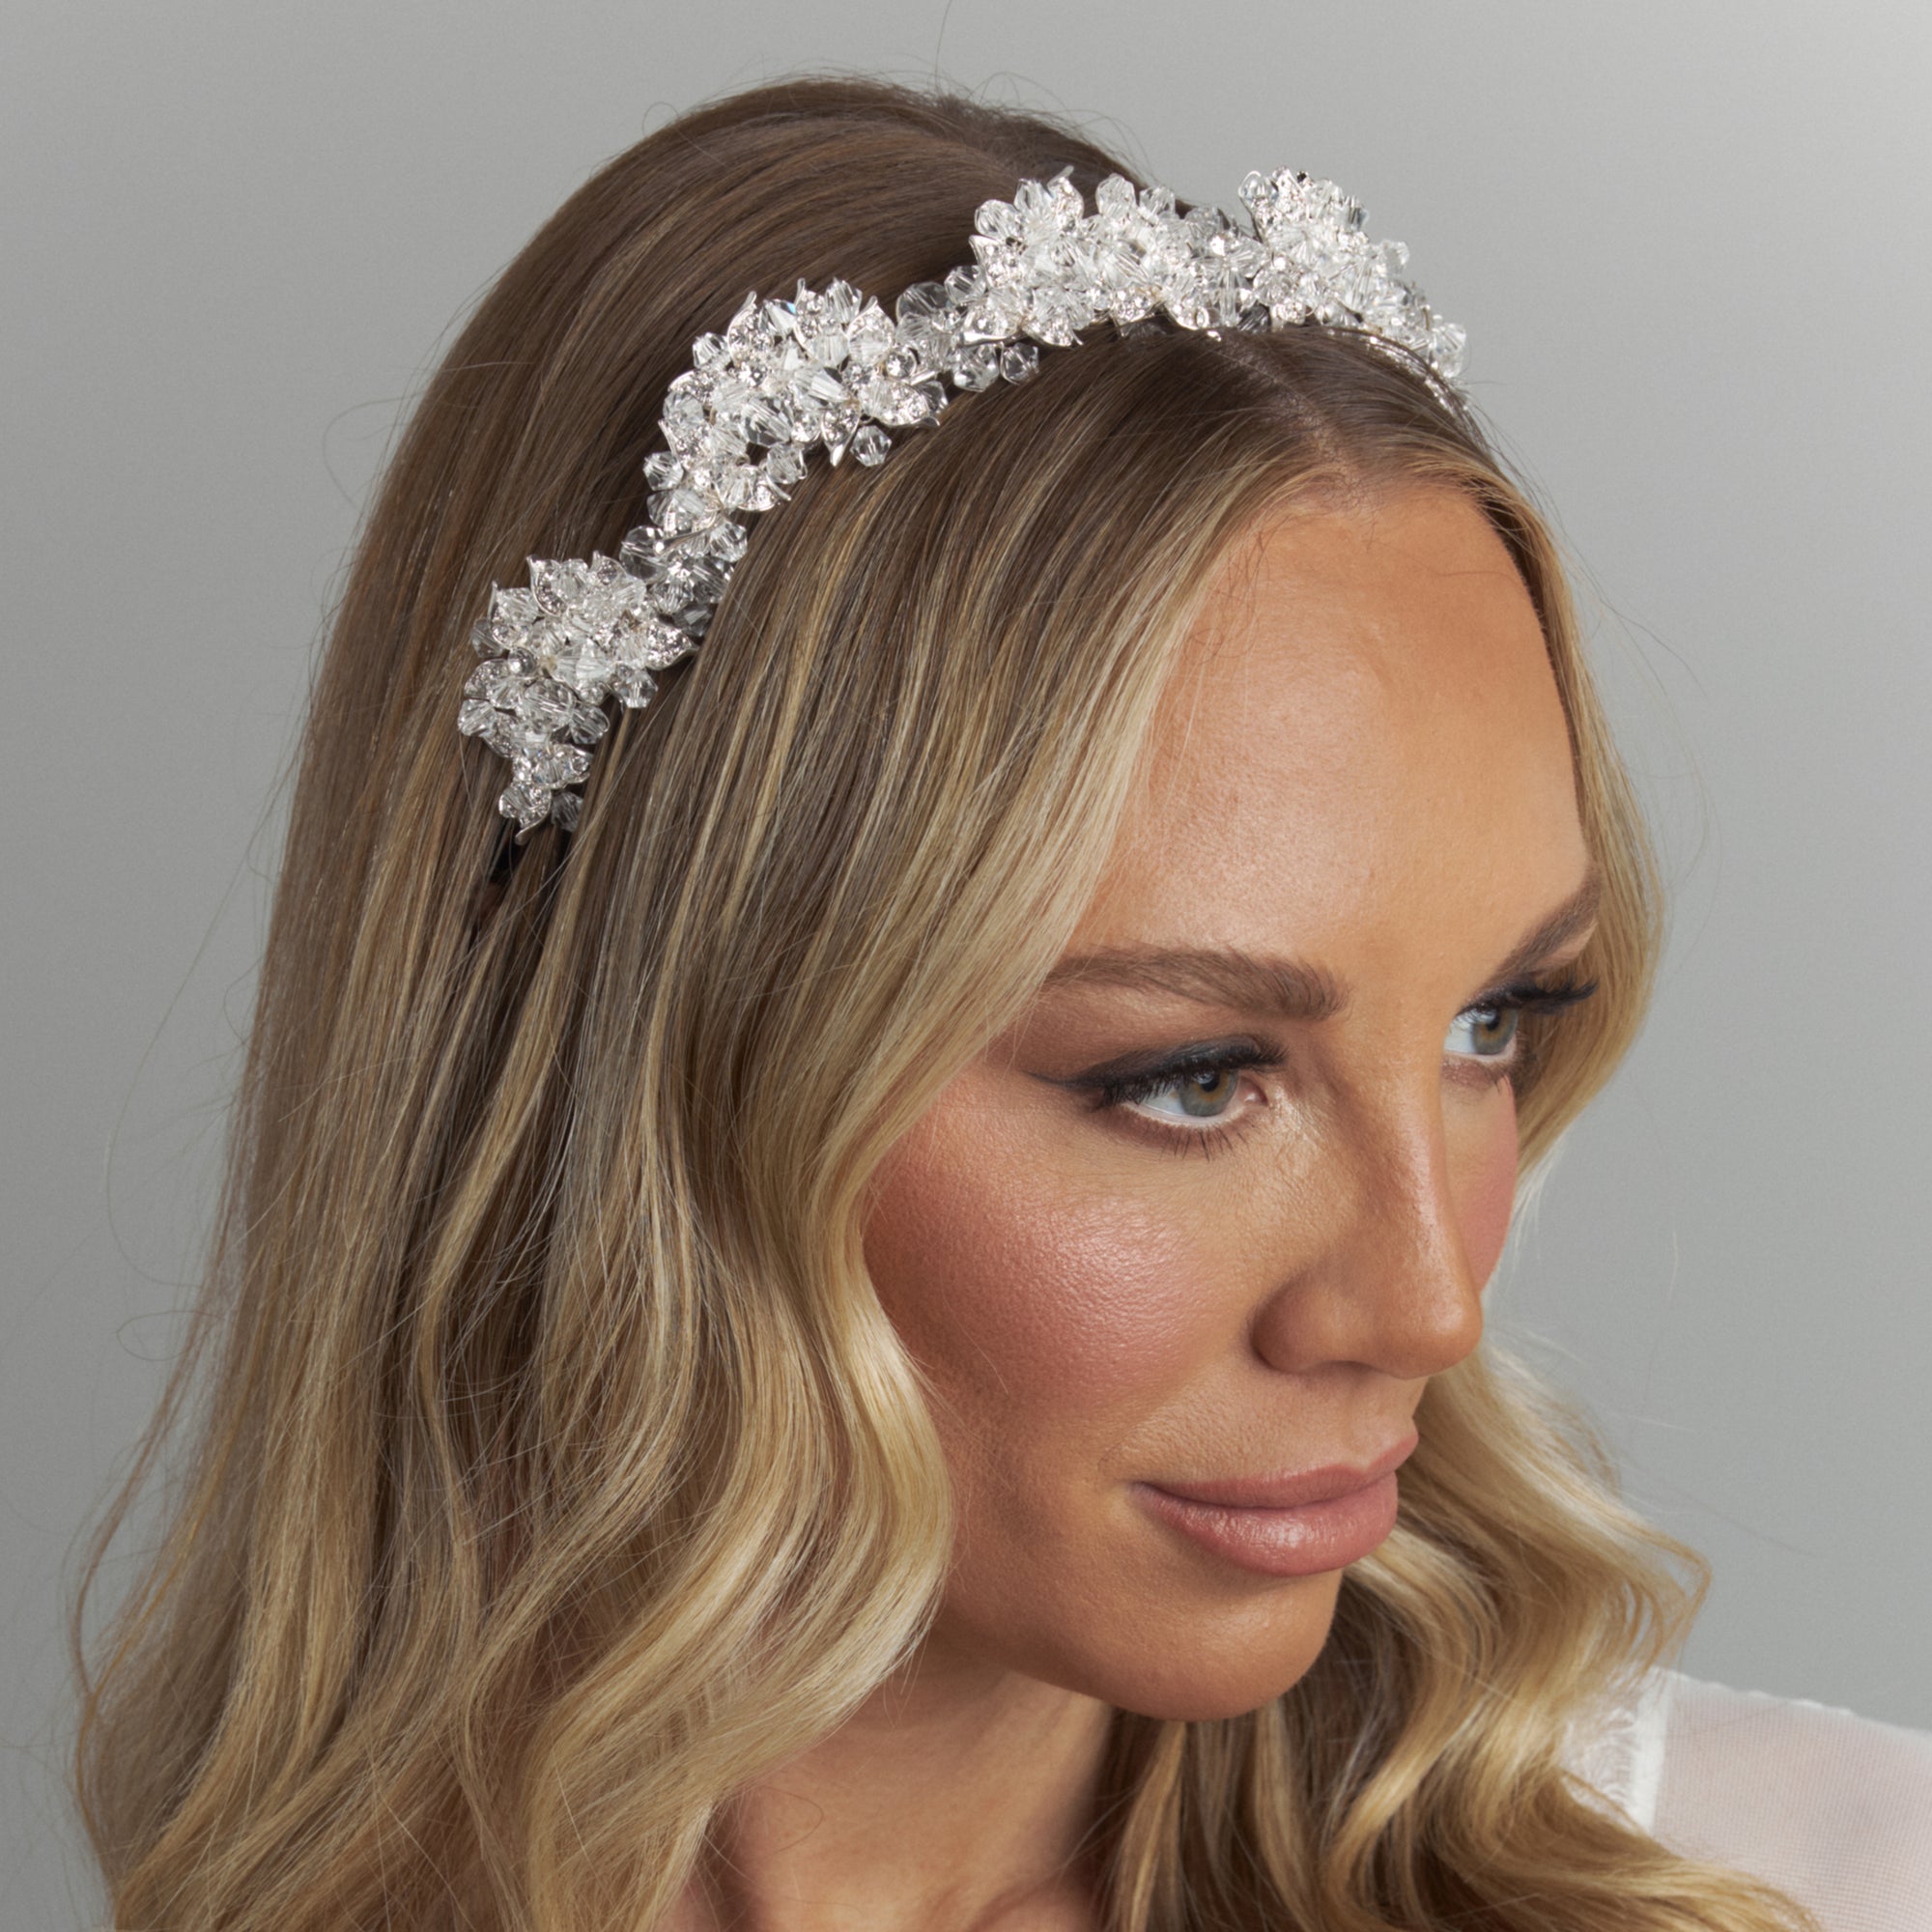 Dani Bridal wedding crystal headband headpiece